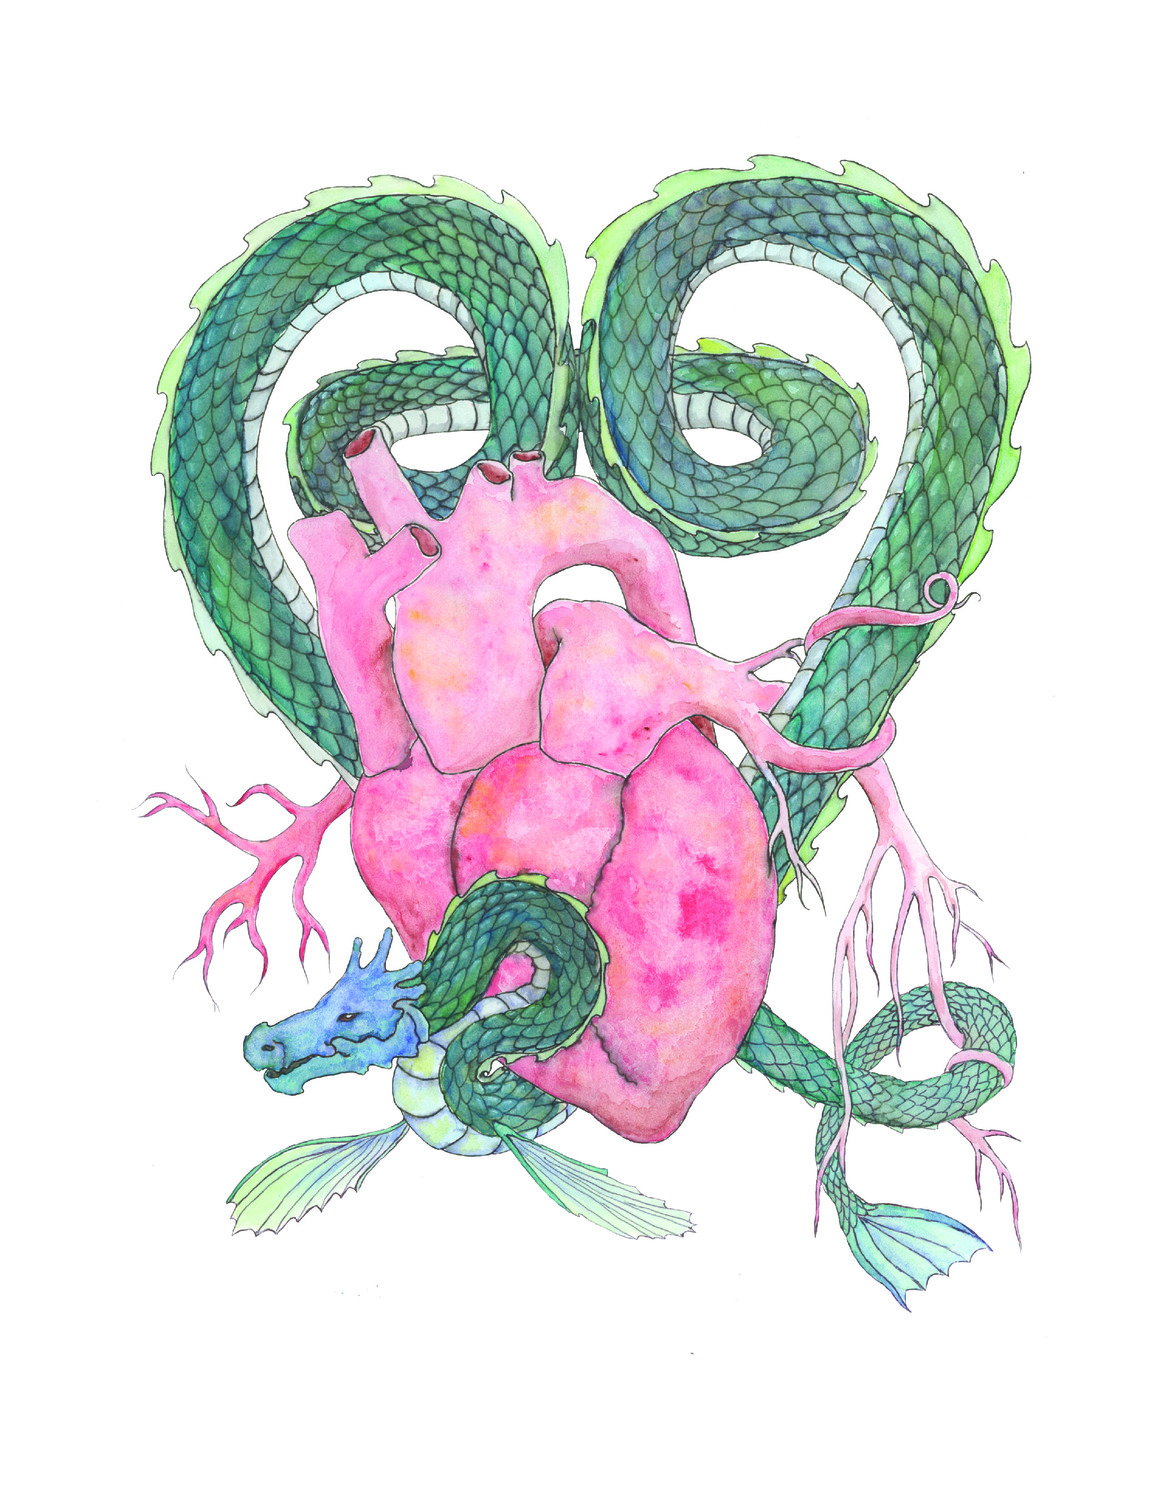 Serpent Heart